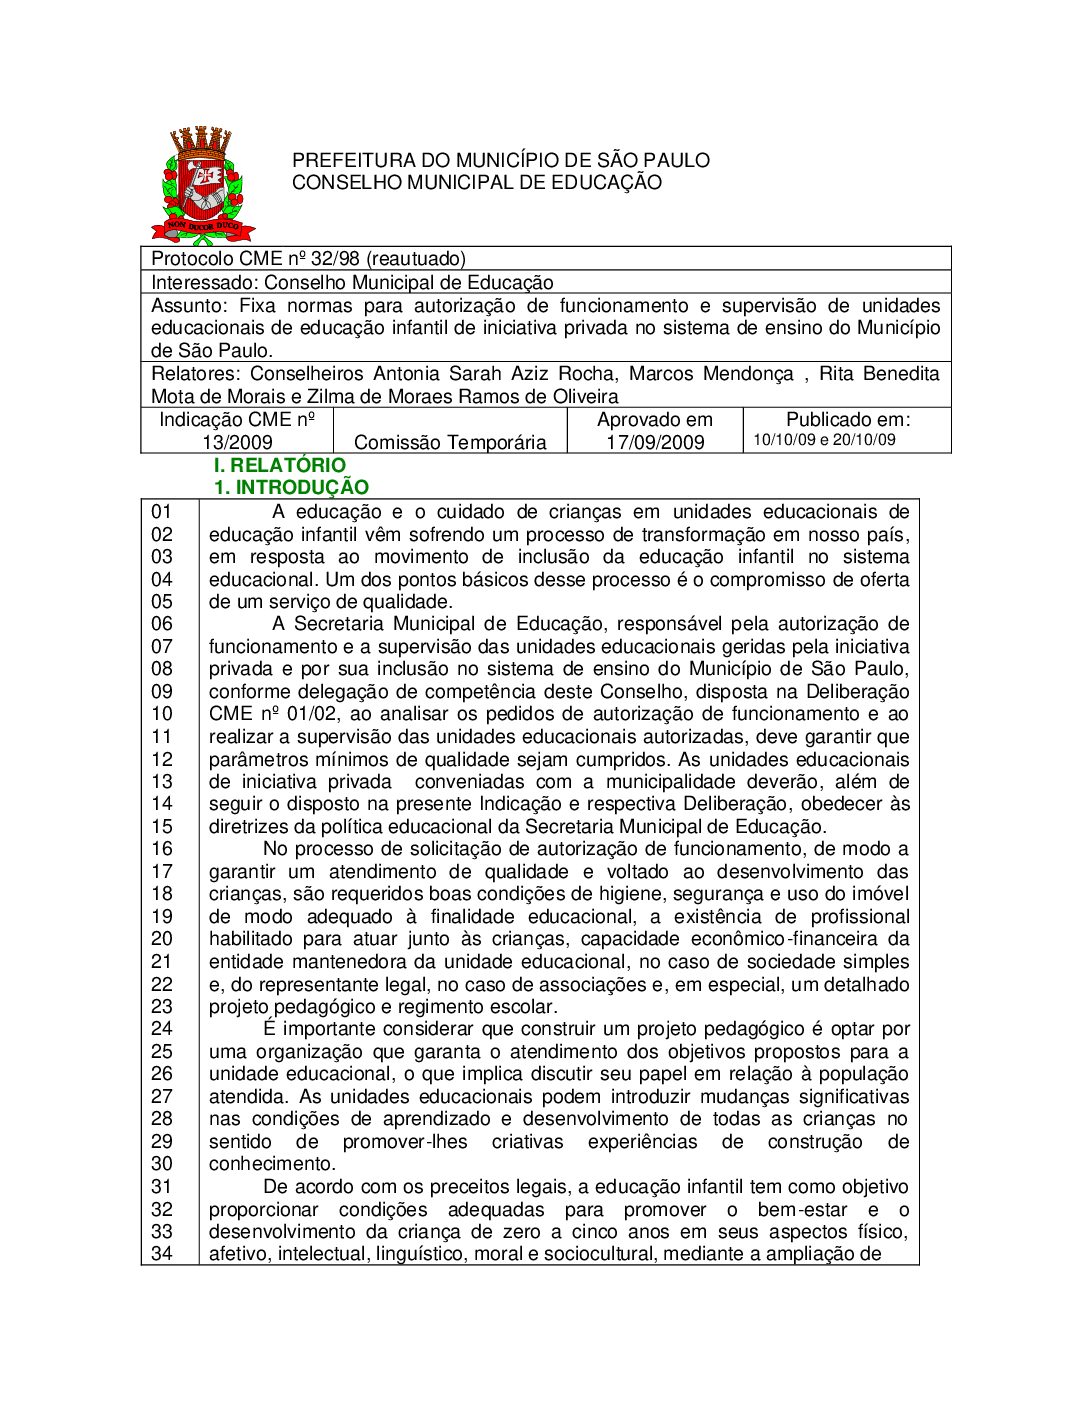 Indicação CME nº 13/2009 - Fixa normas para autorização de funcionamento e supervisão de unidades educacionais de educação infantil de iniciativa privada no sistema de ensino do Município de São Paulo